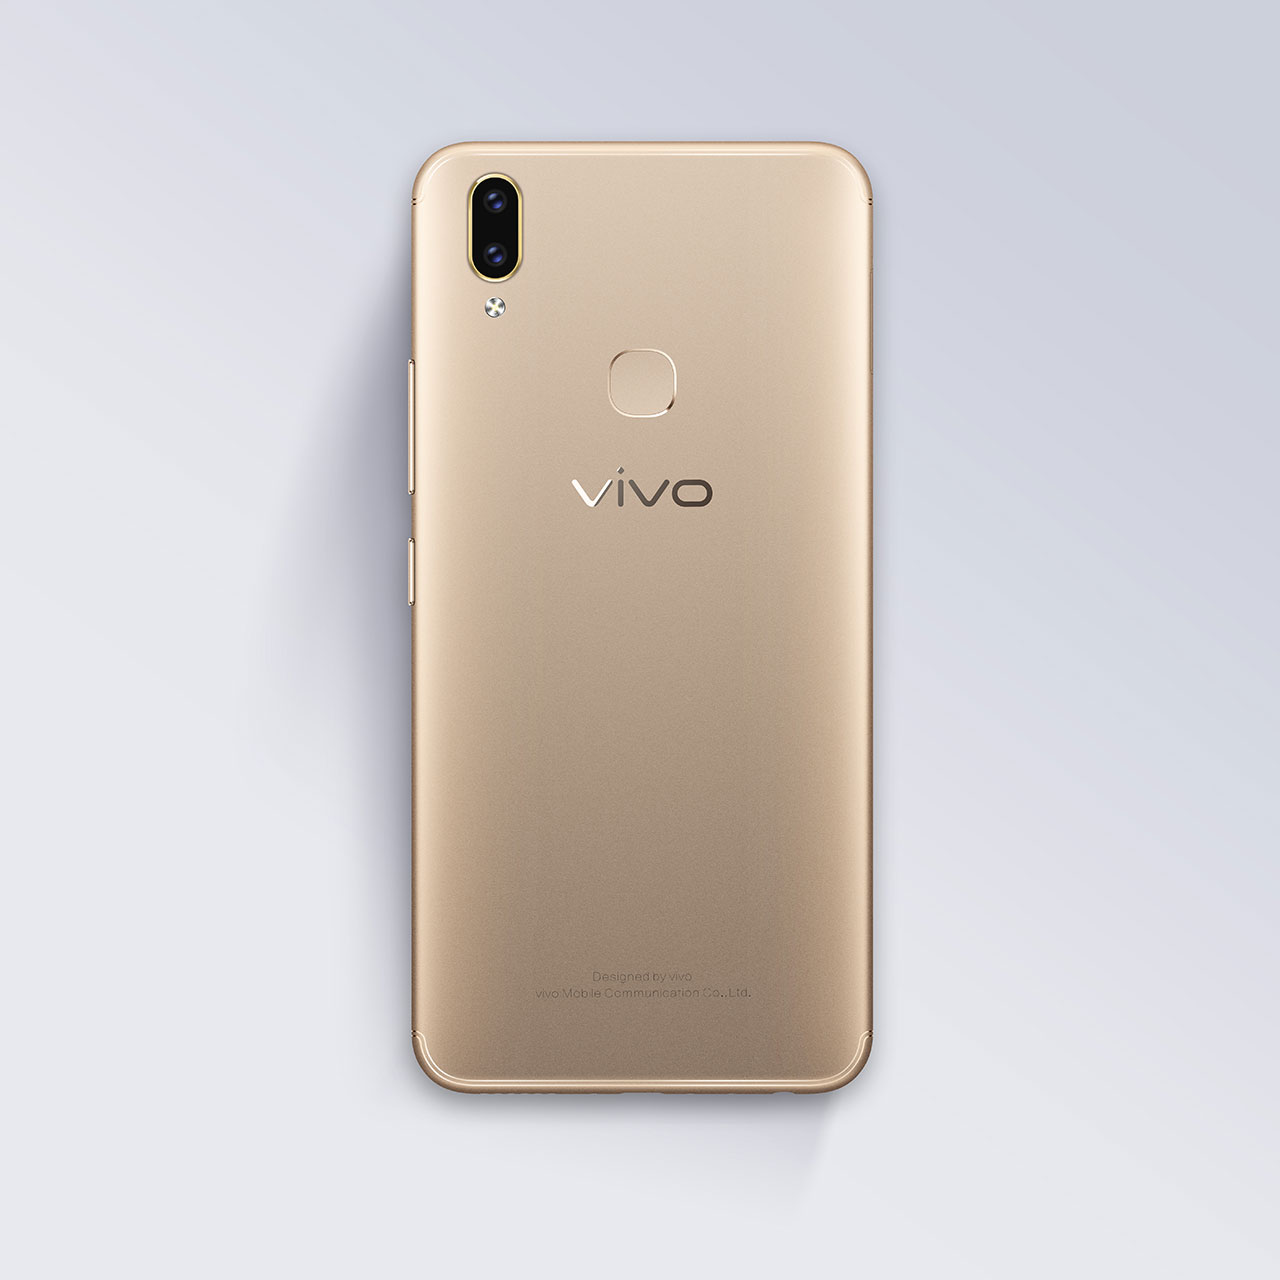 Vivo презентовала безрамочный смартфон Vivo V9 в России‍